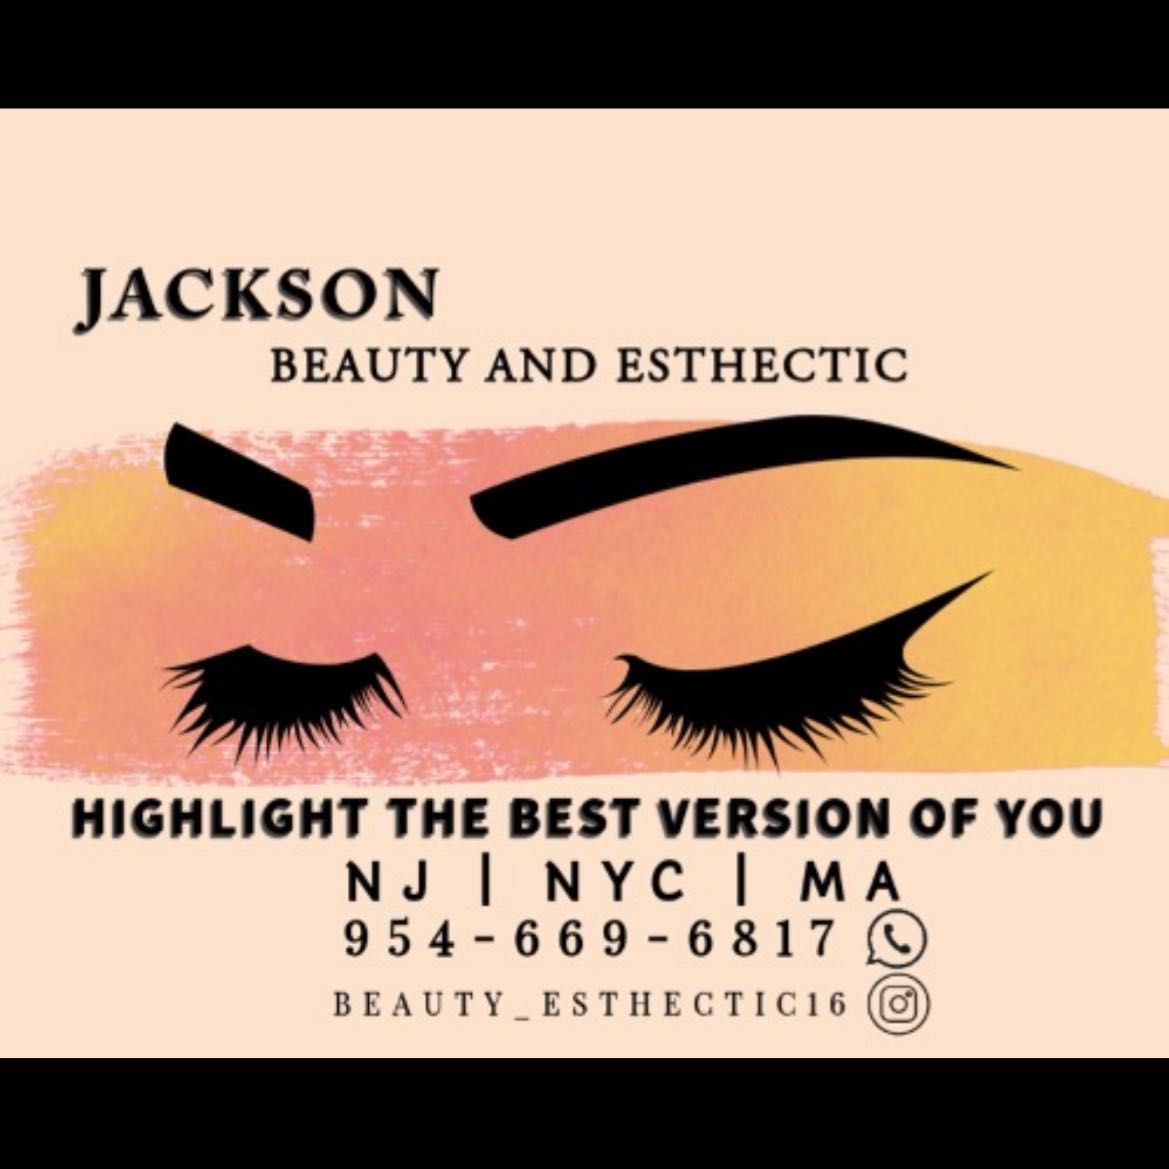 Beauty-esthetic16, 2801 John F Kennedy Blvd, Jersey City, 07306